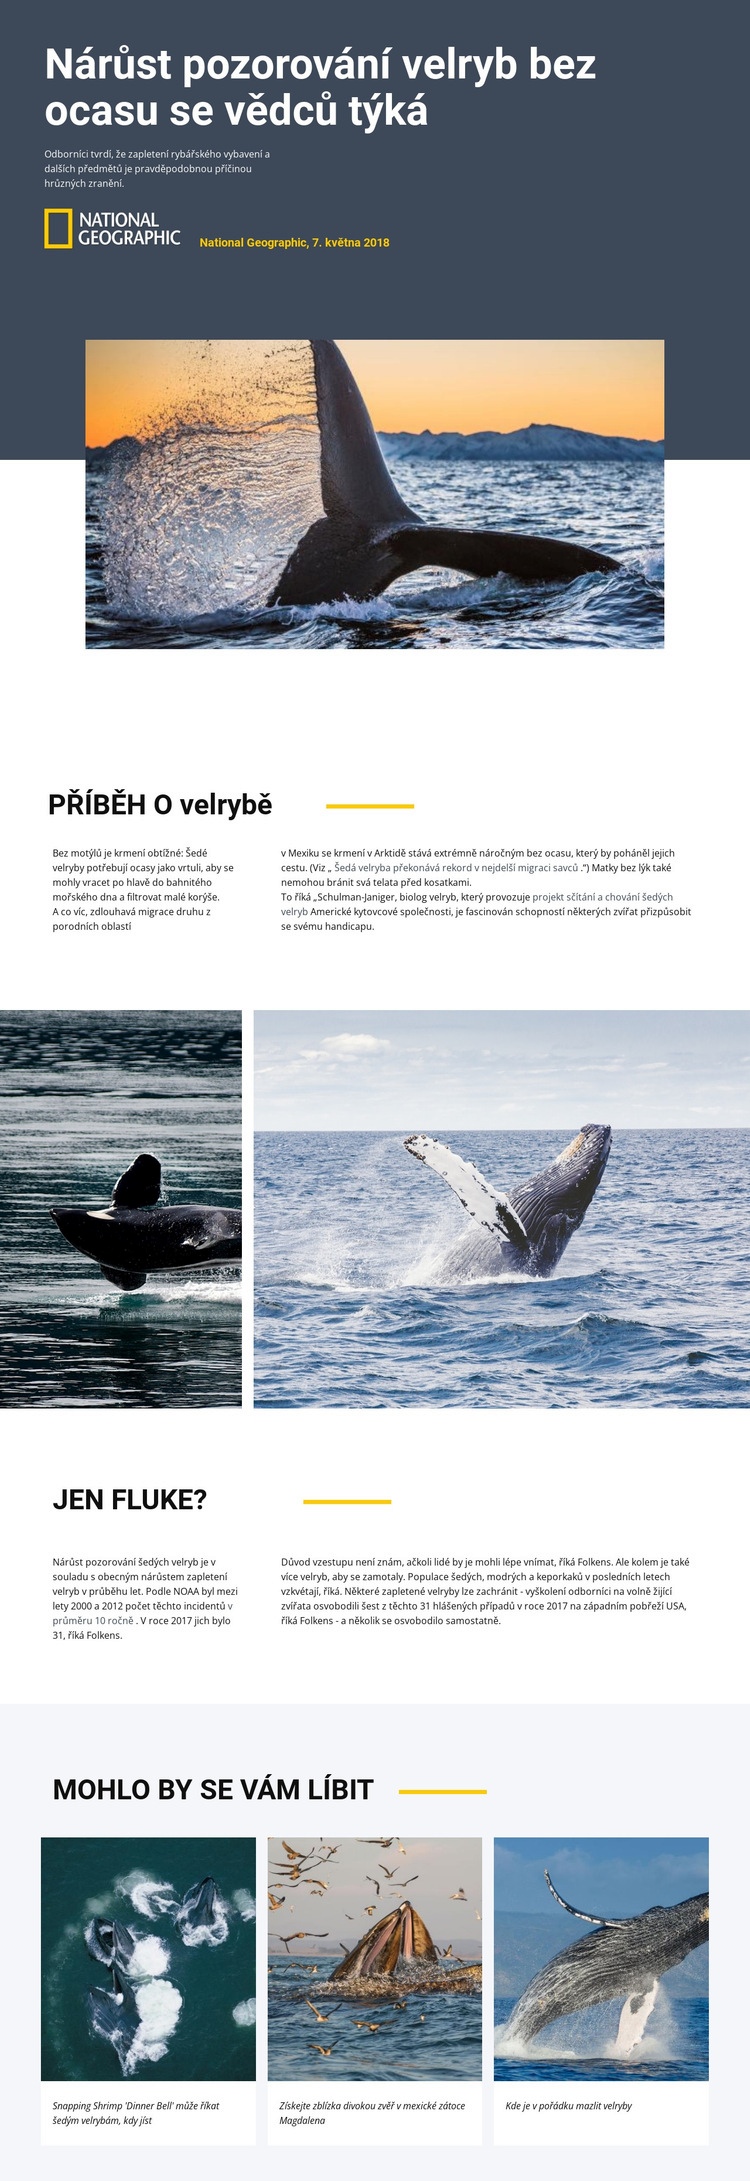 Středisko pro sledování velryb Šablona webové stránky